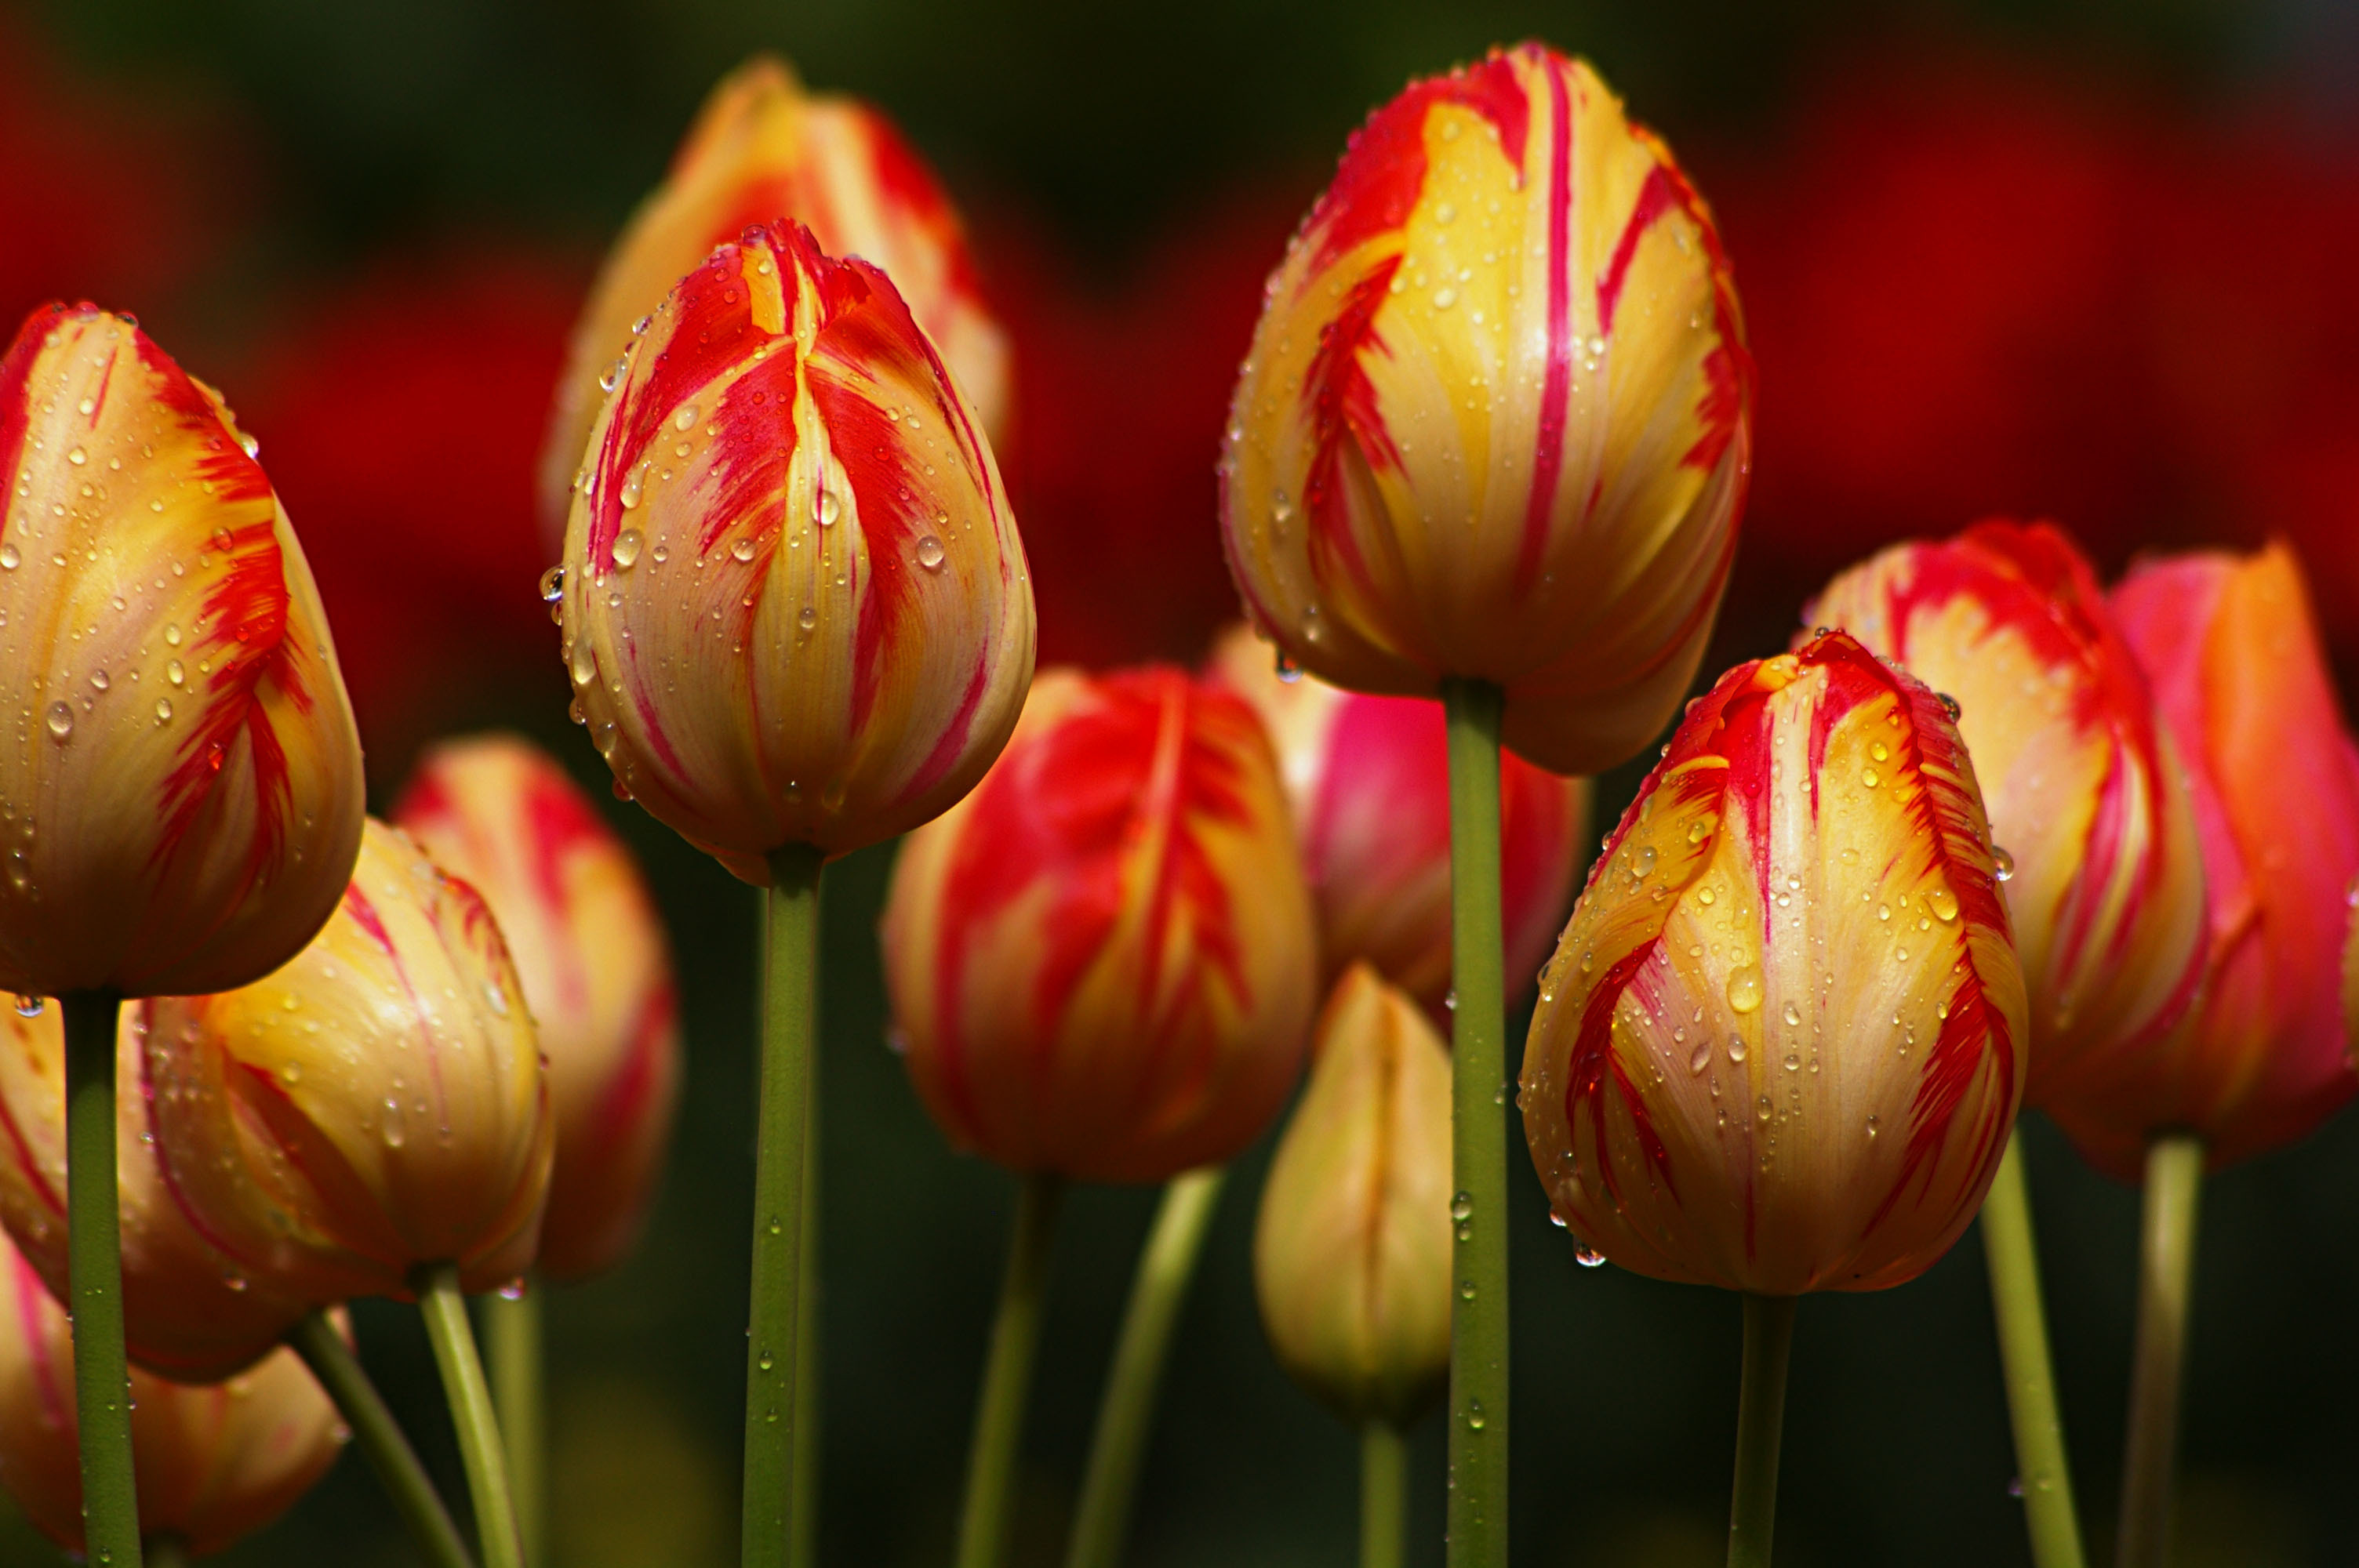 Cập nhật hình nền điện thoại mới mẻ và độc đáo cho chiếc điện thoại của bạn với các bức tranh hoa tulip đầy màu sắc. Hình nền điện thoại này sẽ làm nổi bật chiếc điện thoại của bạn và mang đến sự sang trọng và sang trọng.